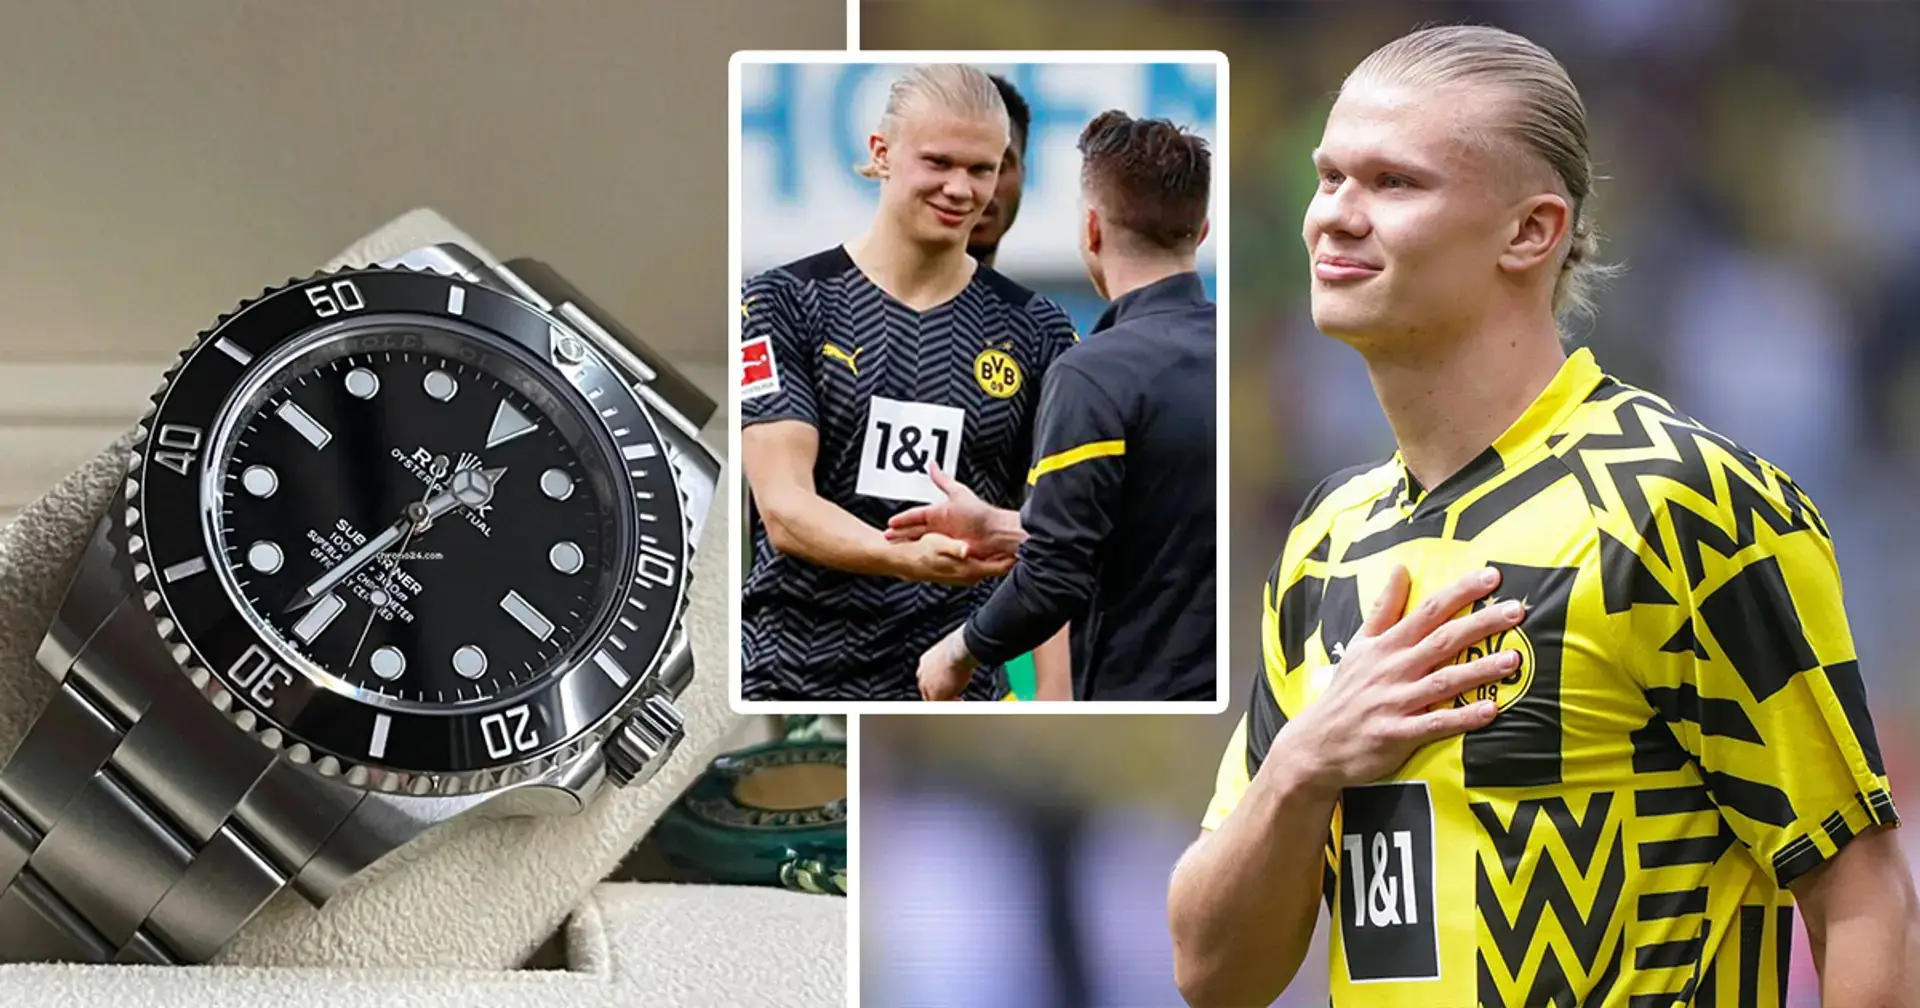 Gran gesto de Haaland: Erling obsequia a sus compañeros y empleados del Dortmund relojes Rolex de lujo como regalo de despedida 